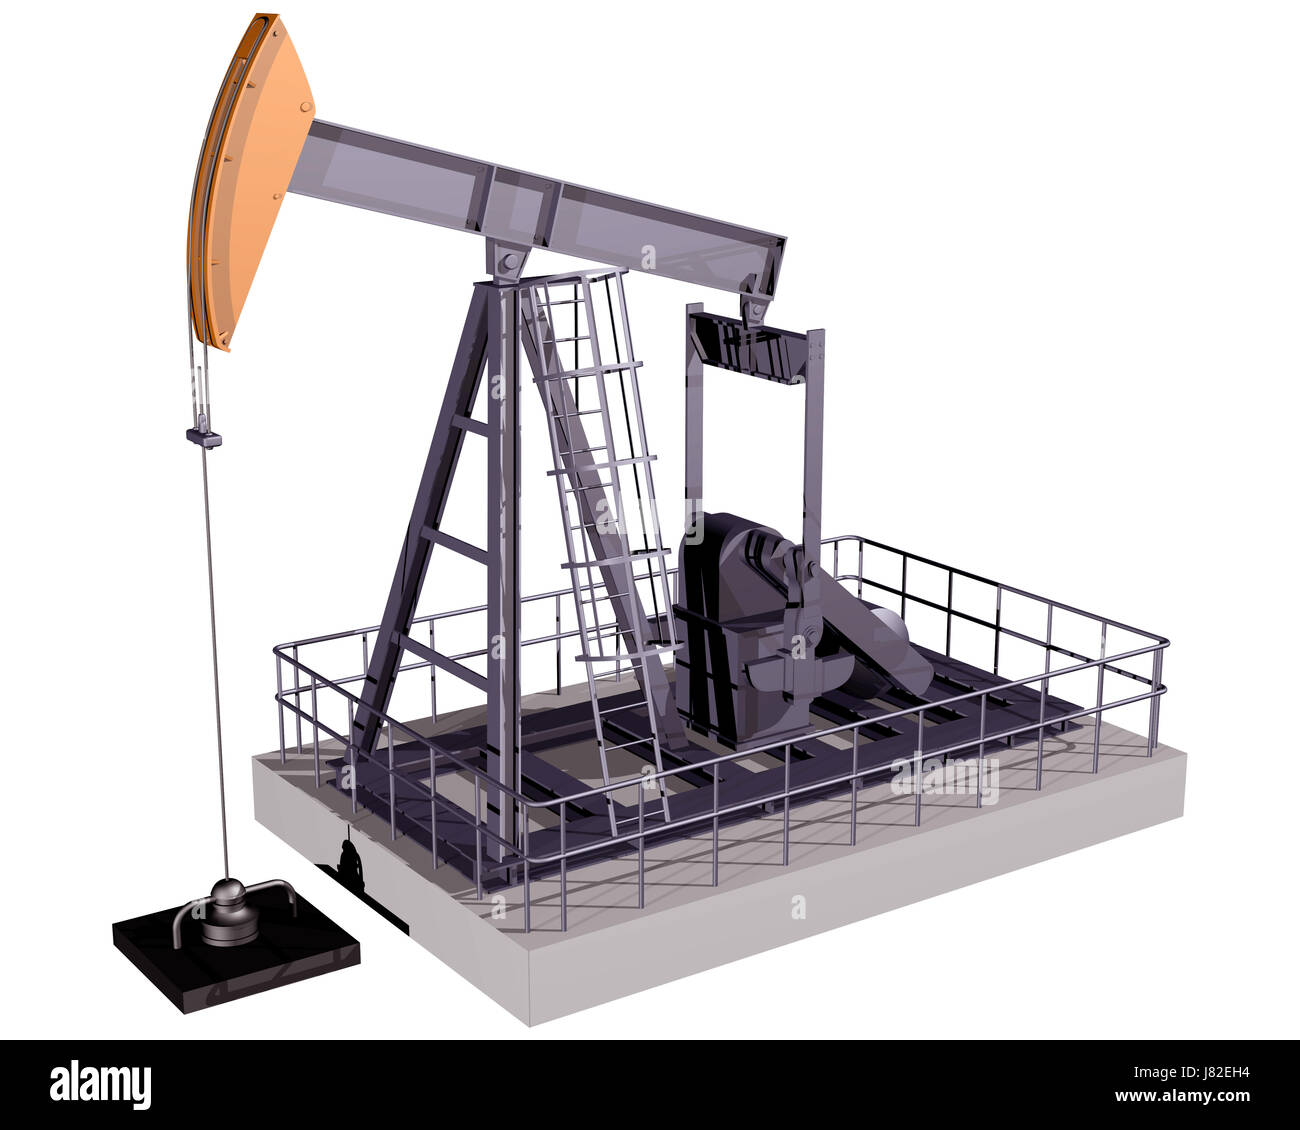 Bohren Sie Derrick Bohrung Öl Kran isoliert Industrie Energie macht Bohren Stockfoto